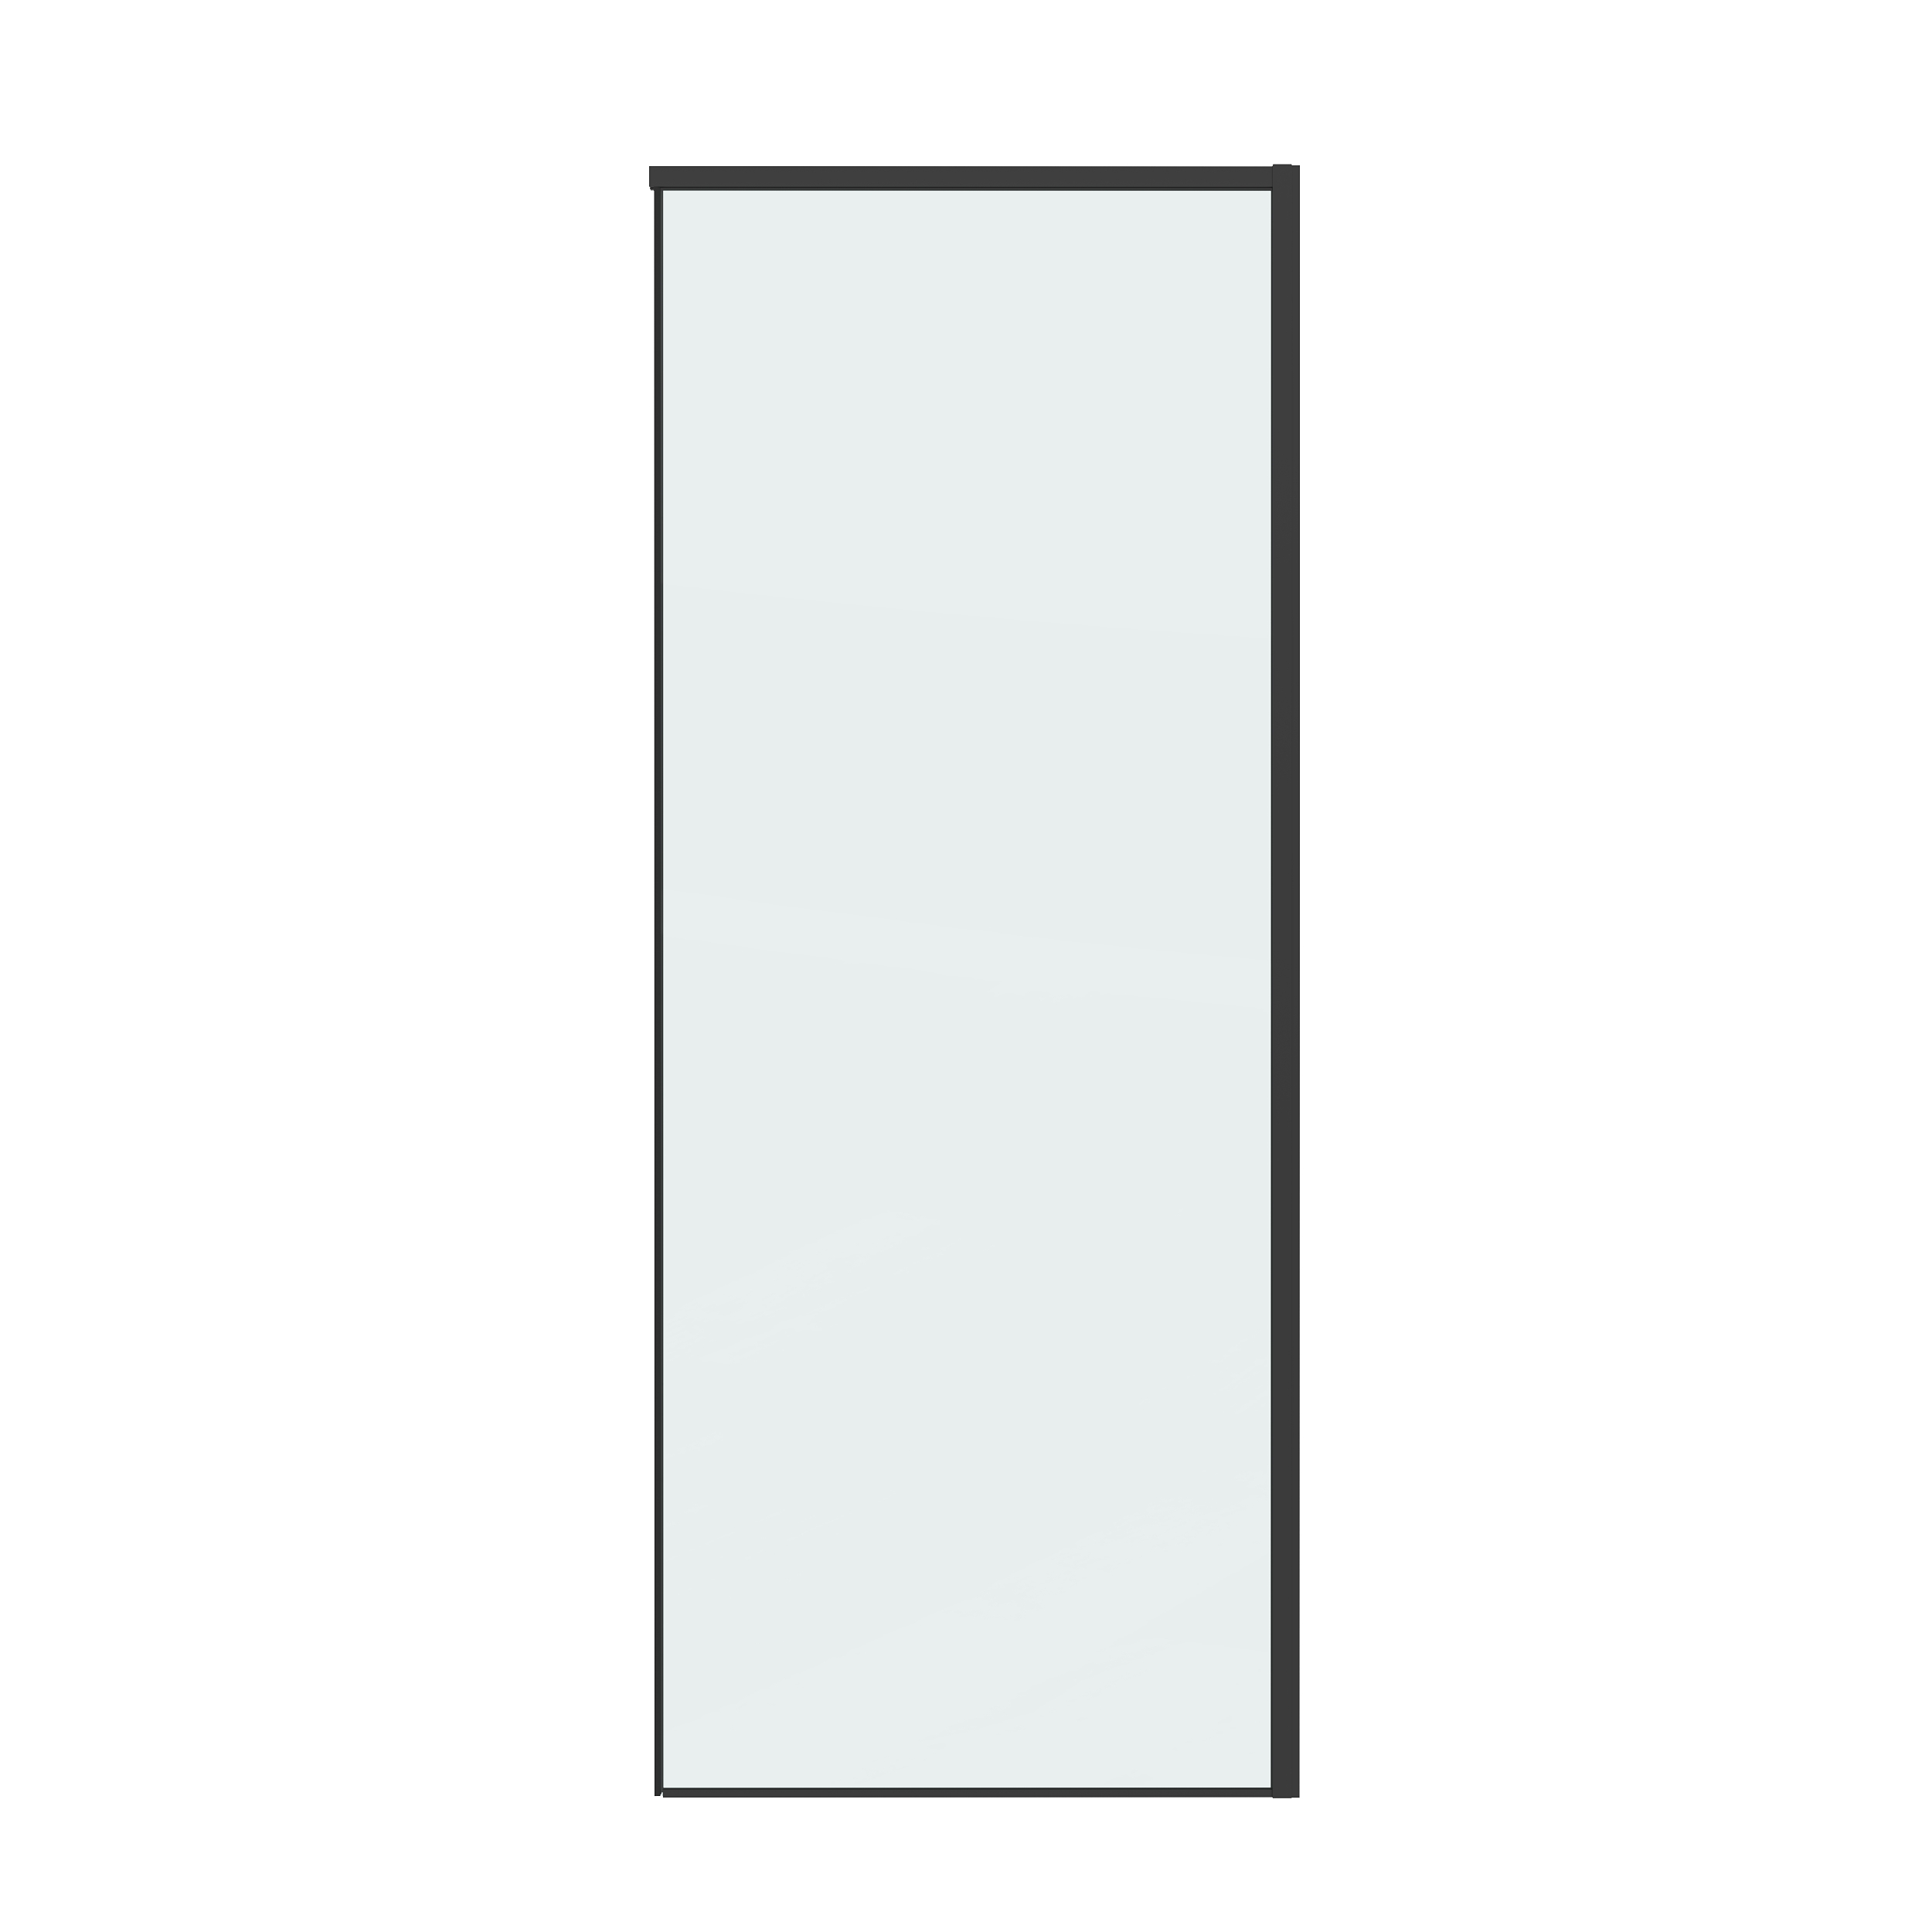 Боковая стенка Grossman Galaxy 90x195 200.K33.01.90.21.00 стекло прозрачное, профиль черный матовый